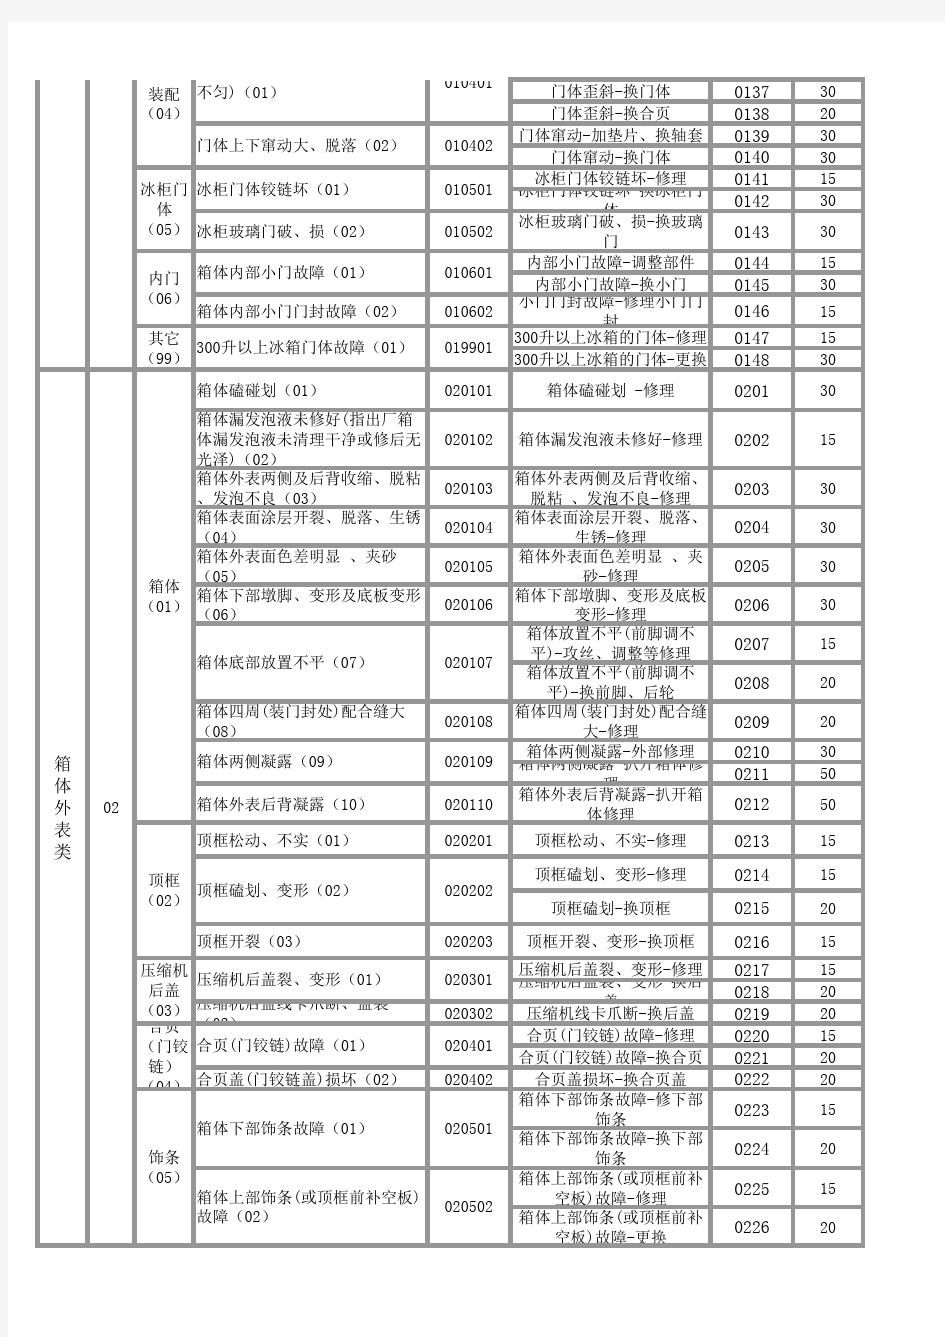 晶弘冰箱售后故障及维修代码一览表(6月28日最新)(1)